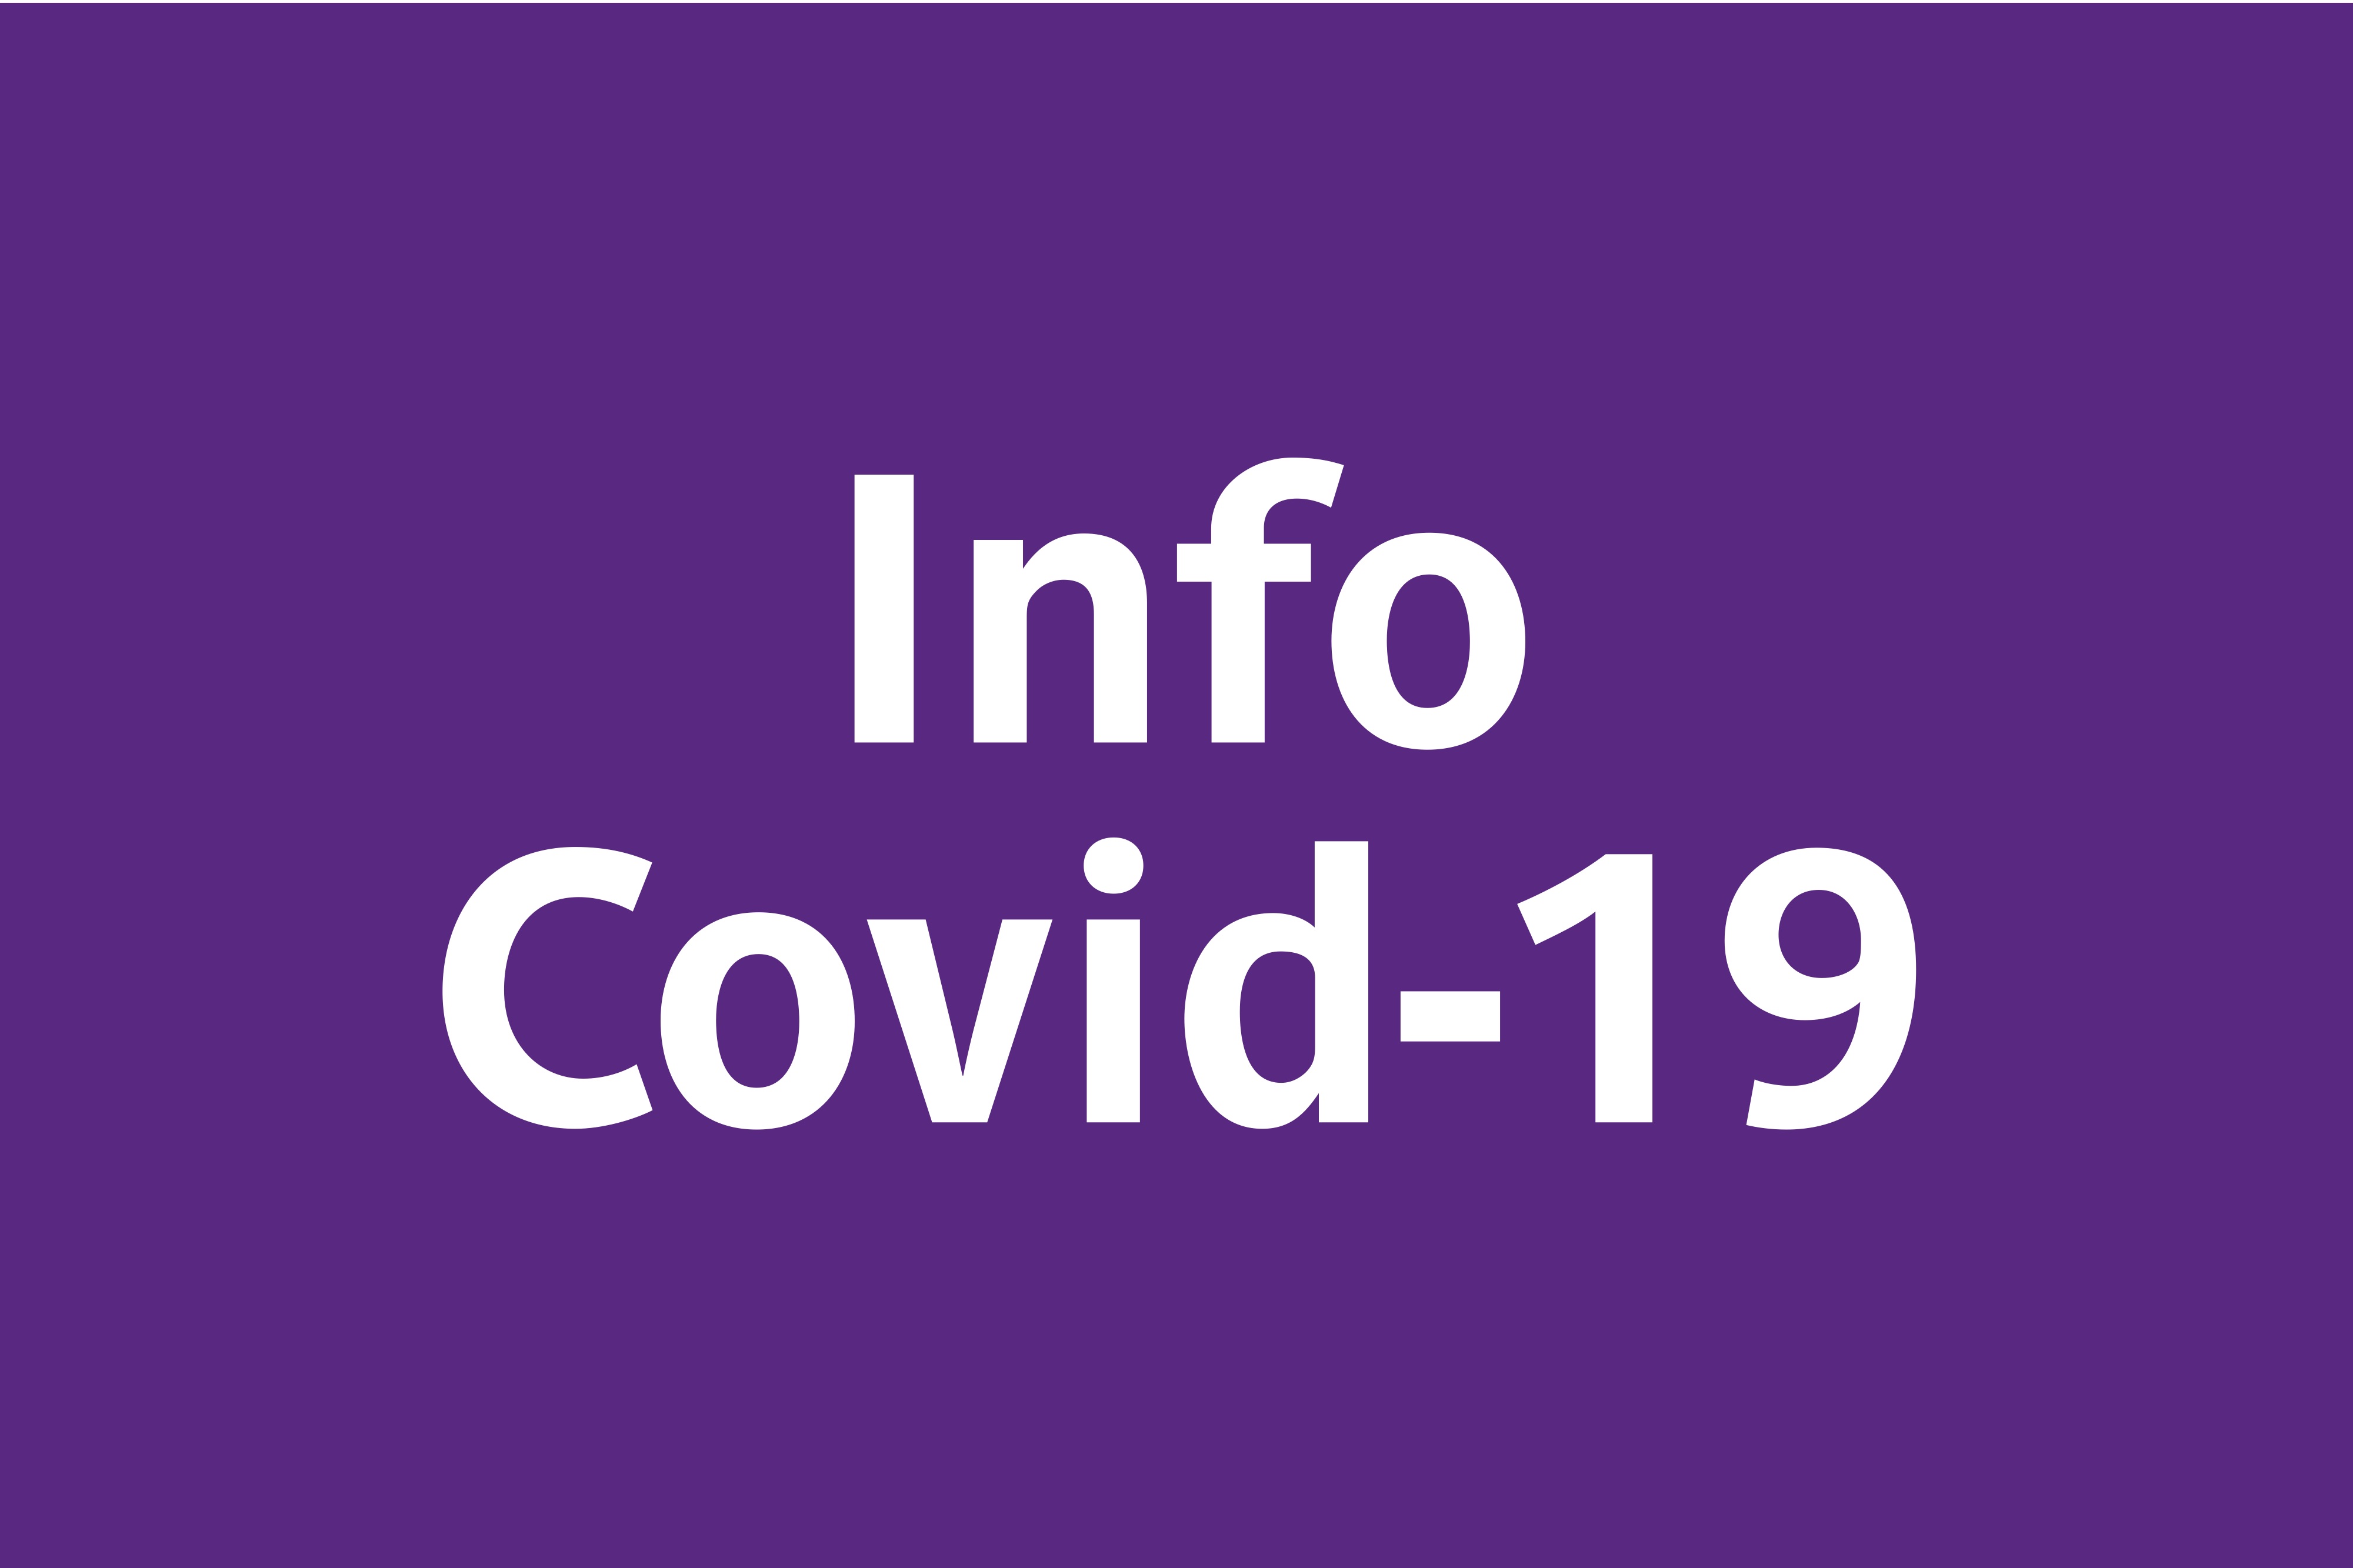 Vignette "Info Covid-19"